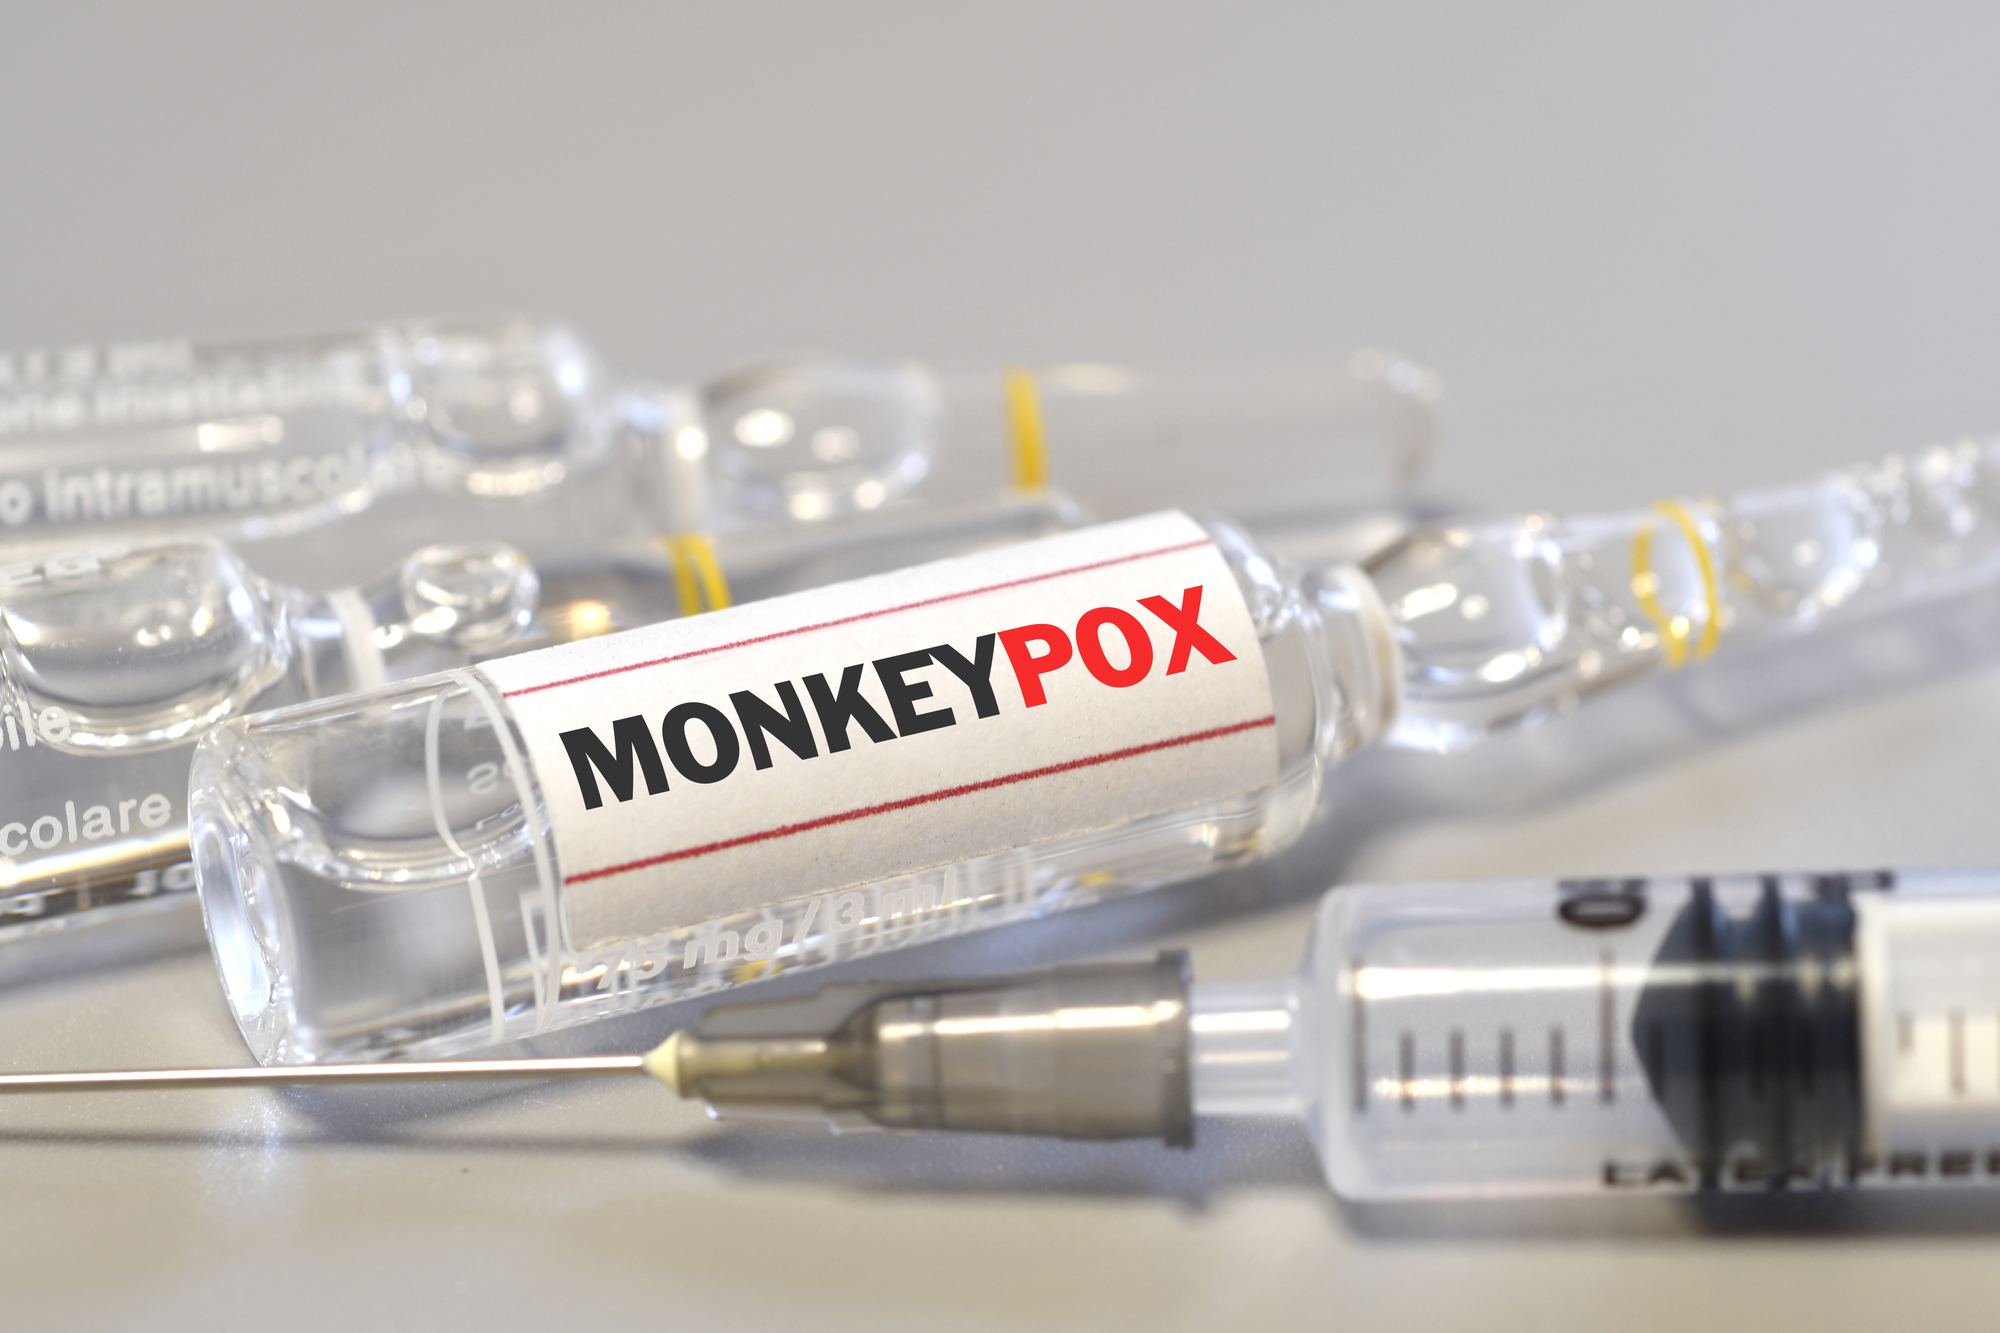 Vaccinul Imvanex, autorizat de Comisia Europeană împotriva variolei maimuţei